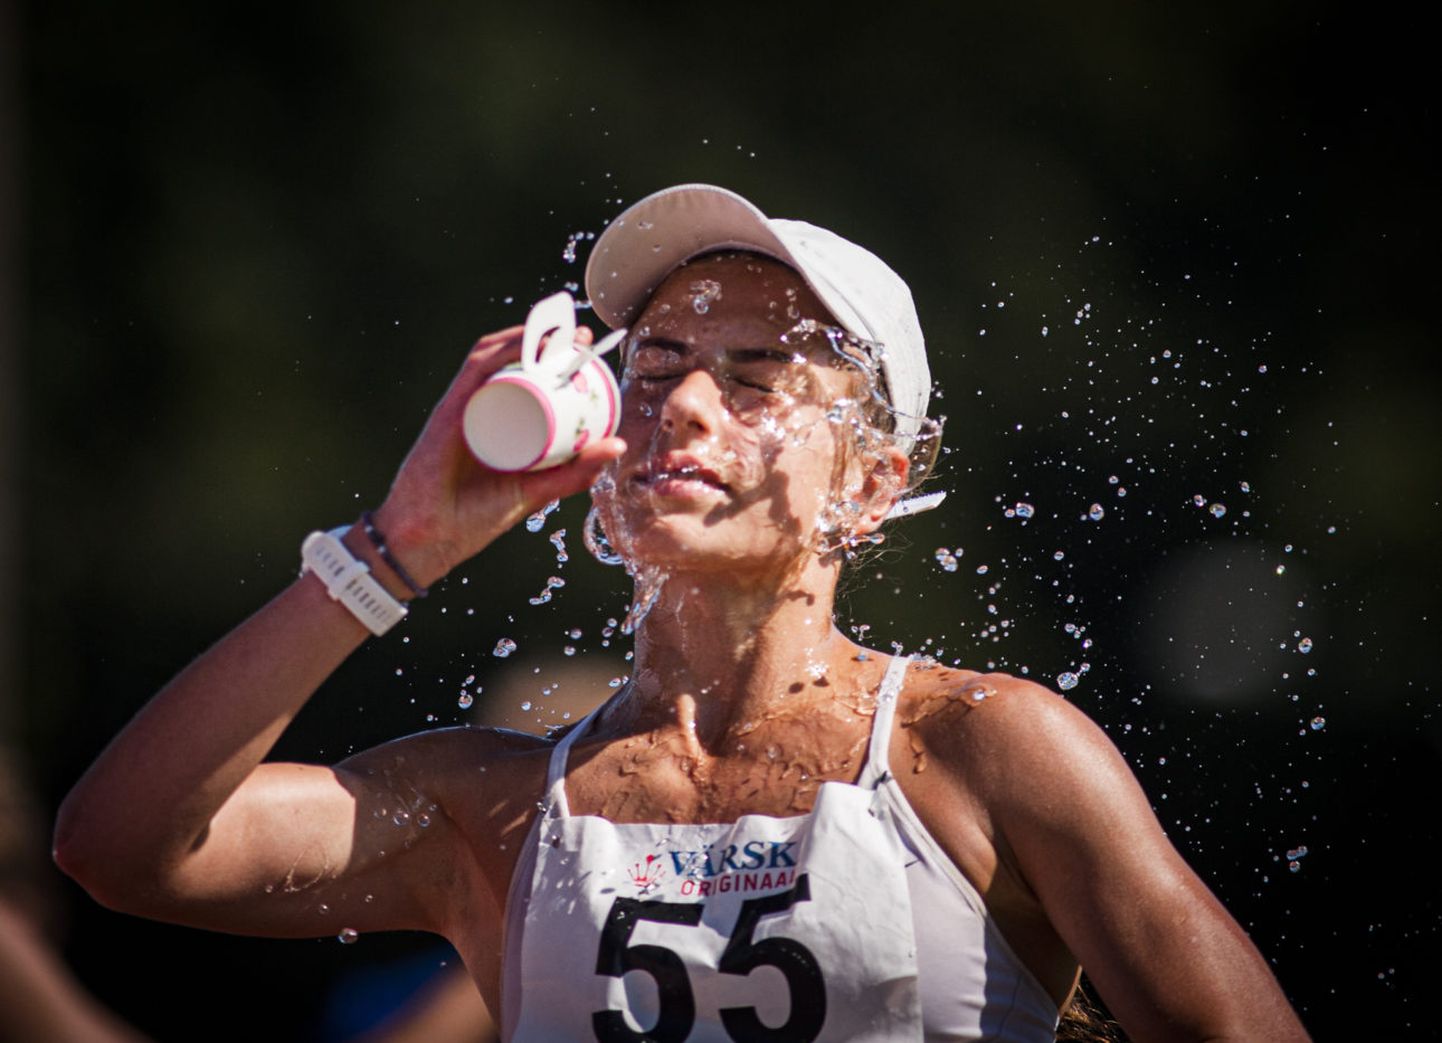 Alles 17aastane Jekaterina Mirotvortseva võitis ligemale 30kraadises palavuses 10 000 meetri käimises Eesti meistritiitli nõnda, et temast kiirem suutis olla vaid üks meesvõistleja.